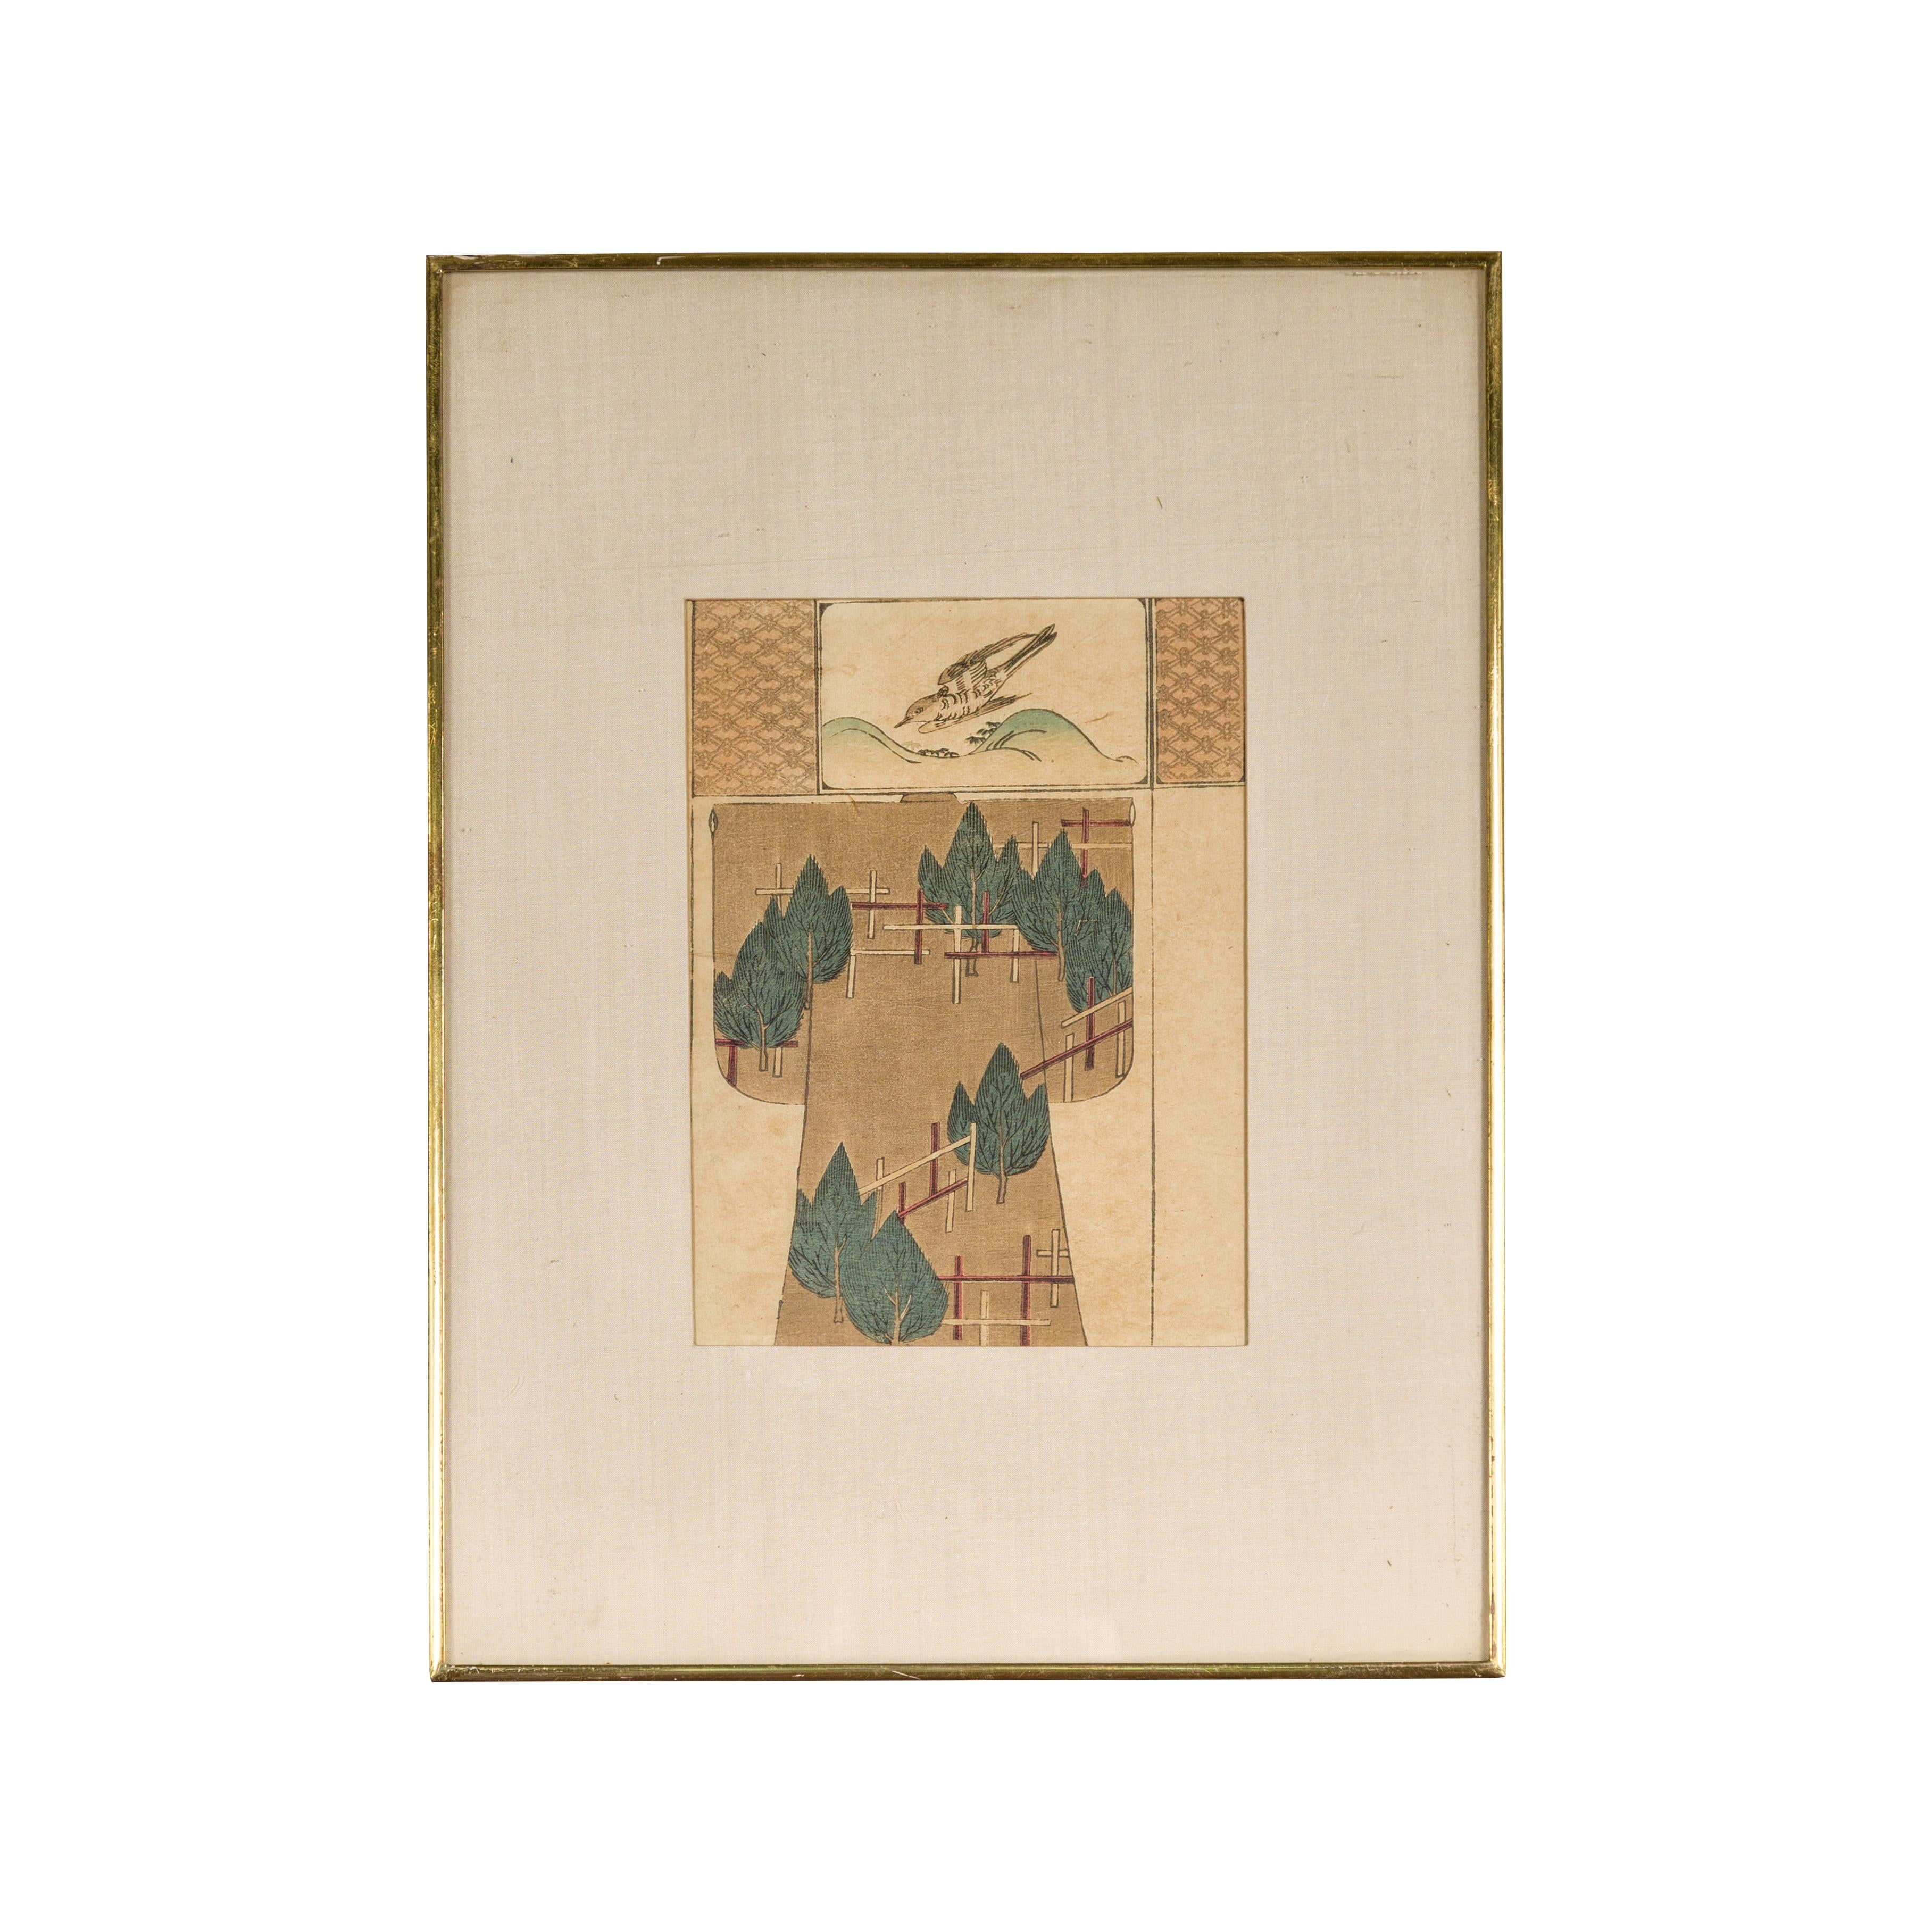 Une ancienne gravure sur bois japonaise représentant un oiseau et des arbres, dans un cadre personnalisé. Plongez dans la beauté sereine de cette ancienne gravure sur bois japonaise, une pièce qui capture magistralement l'essence de l'élégance